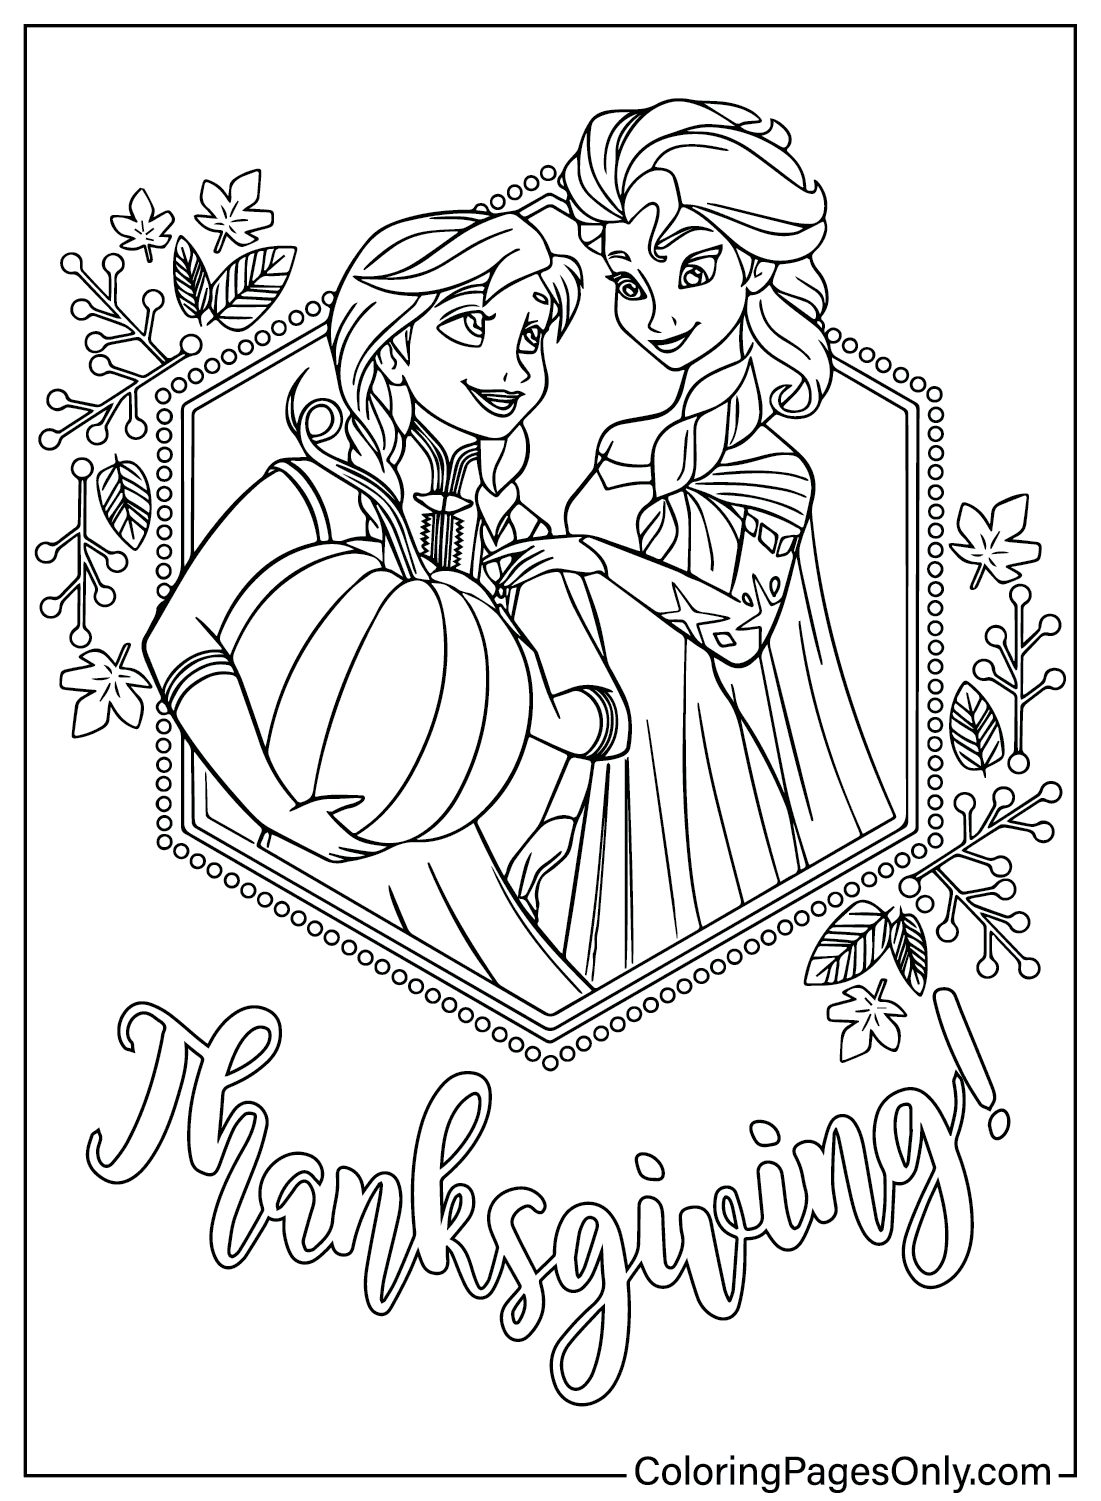 Página para colorear de Acción de Gracias de Elsa y Anna de Acción de Gracias de Disney